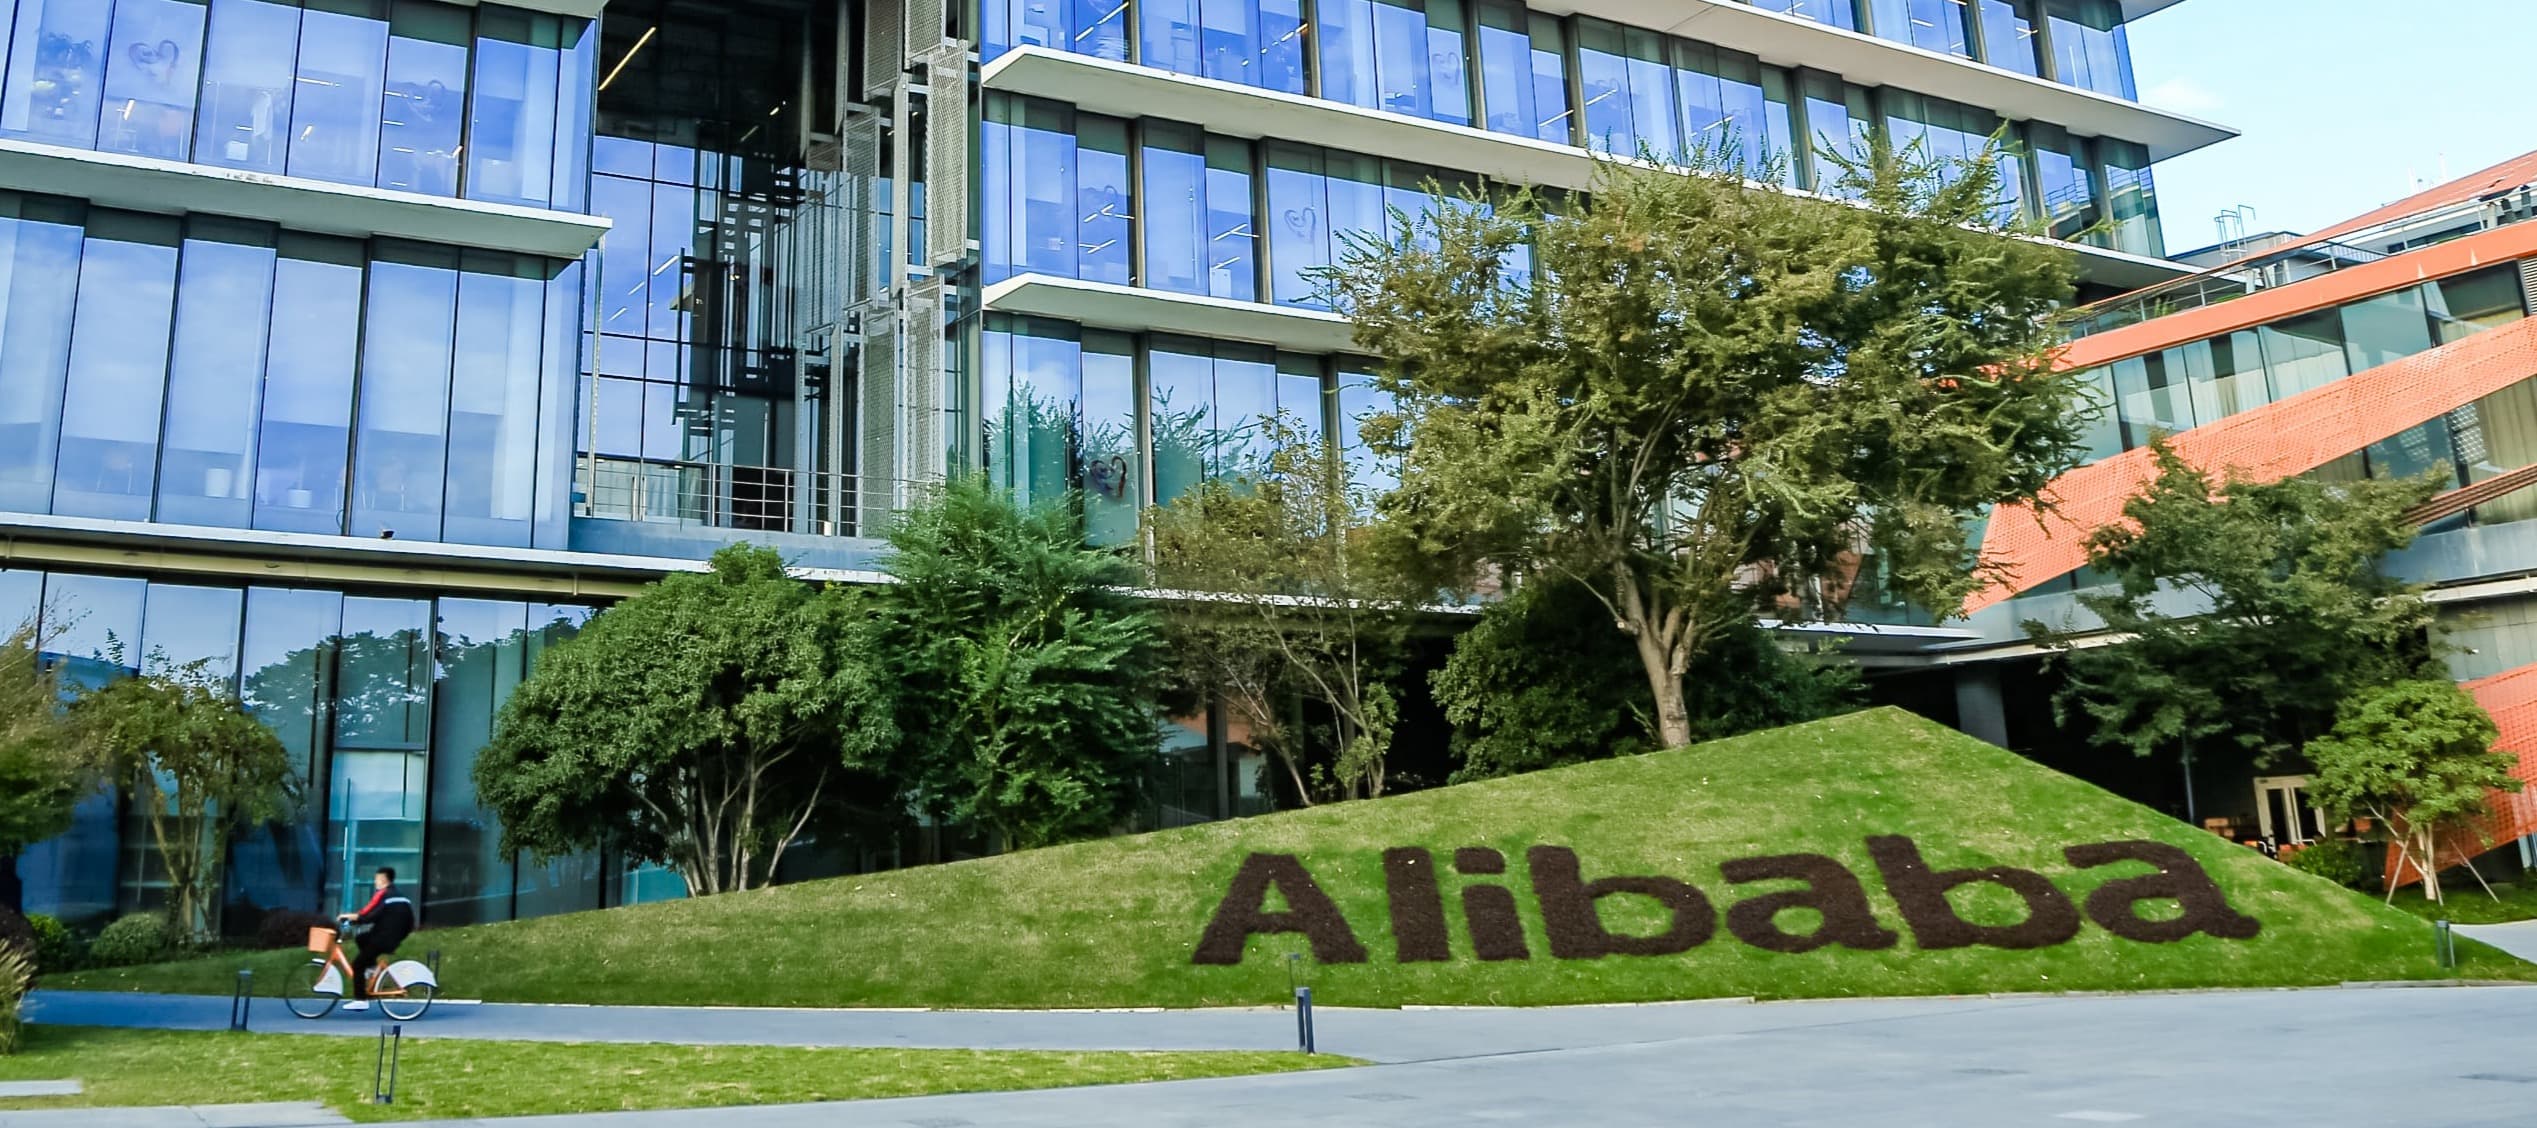 Фото новости: "Власти Китая купили долю в дочерней медиакомпании Alibaba для модерации контента"